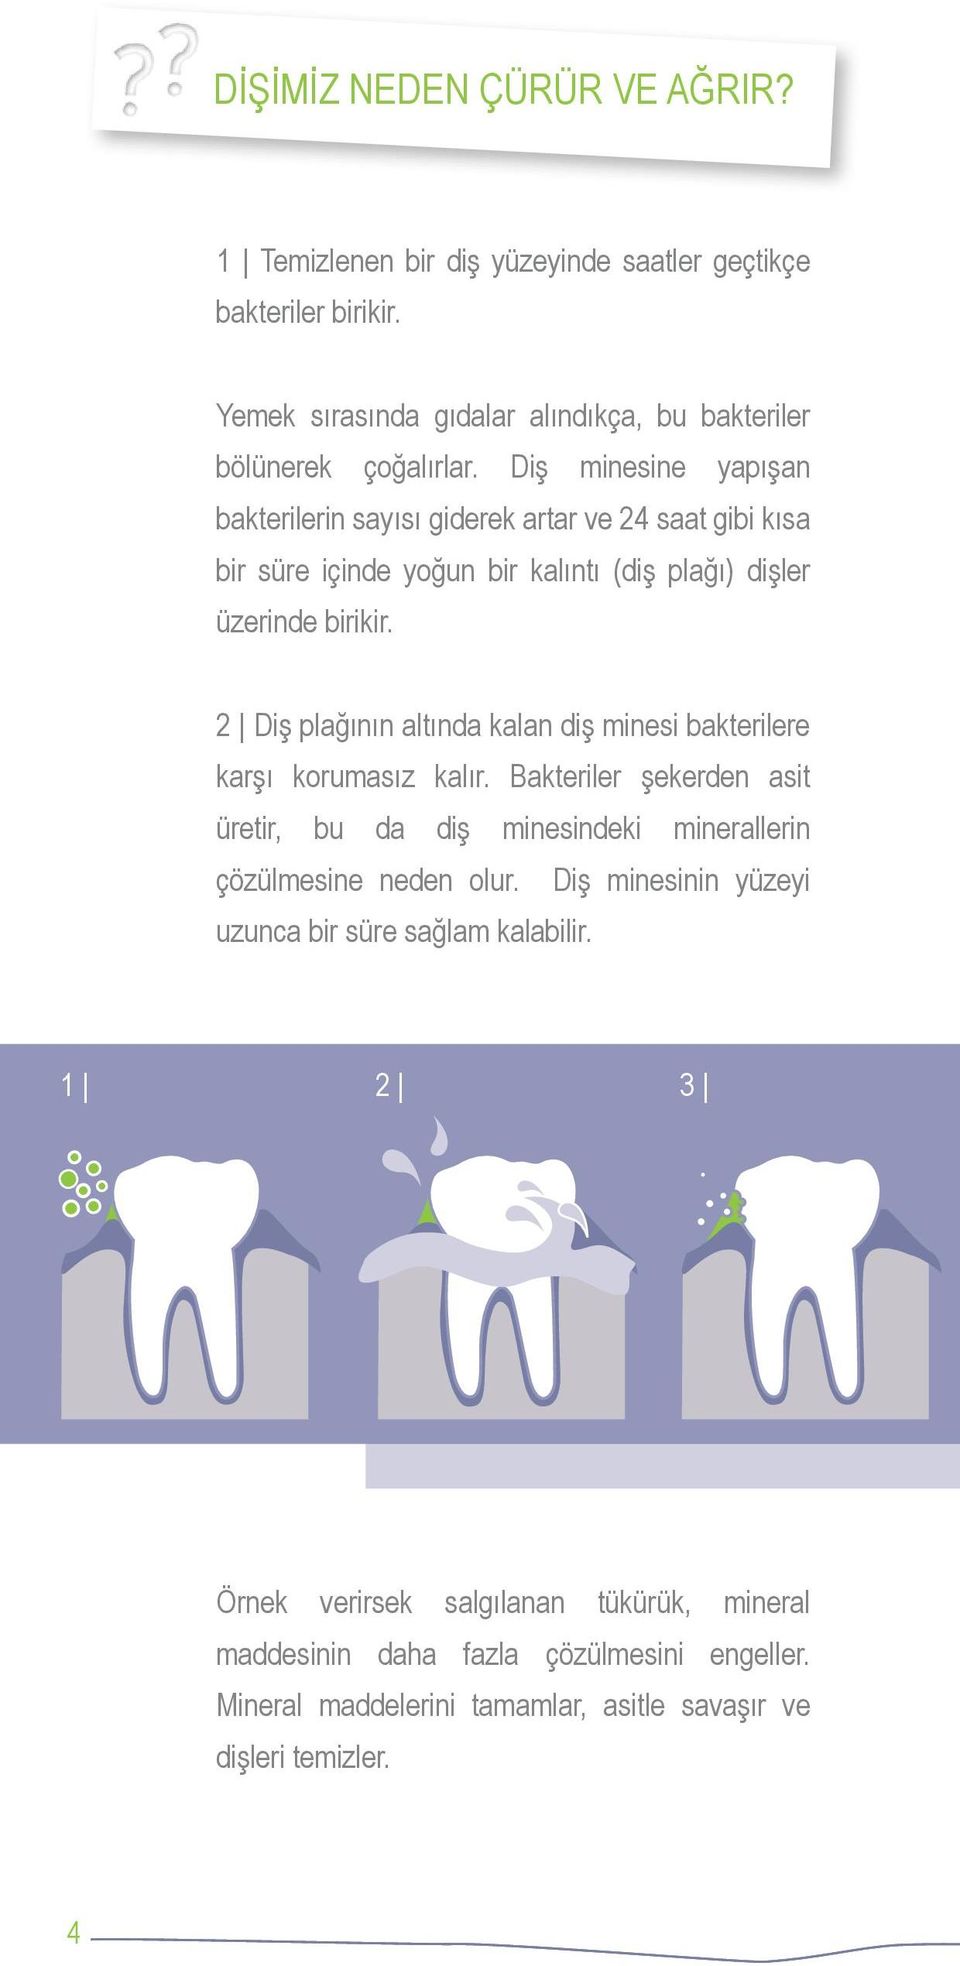 2 Diş plağının altında kalan diş minesi bakterilere karşı korumasız kalır. Bakteriler şekerden asit üretir, bu da diş minesindeki minerallerin çözülmesine neden olur.